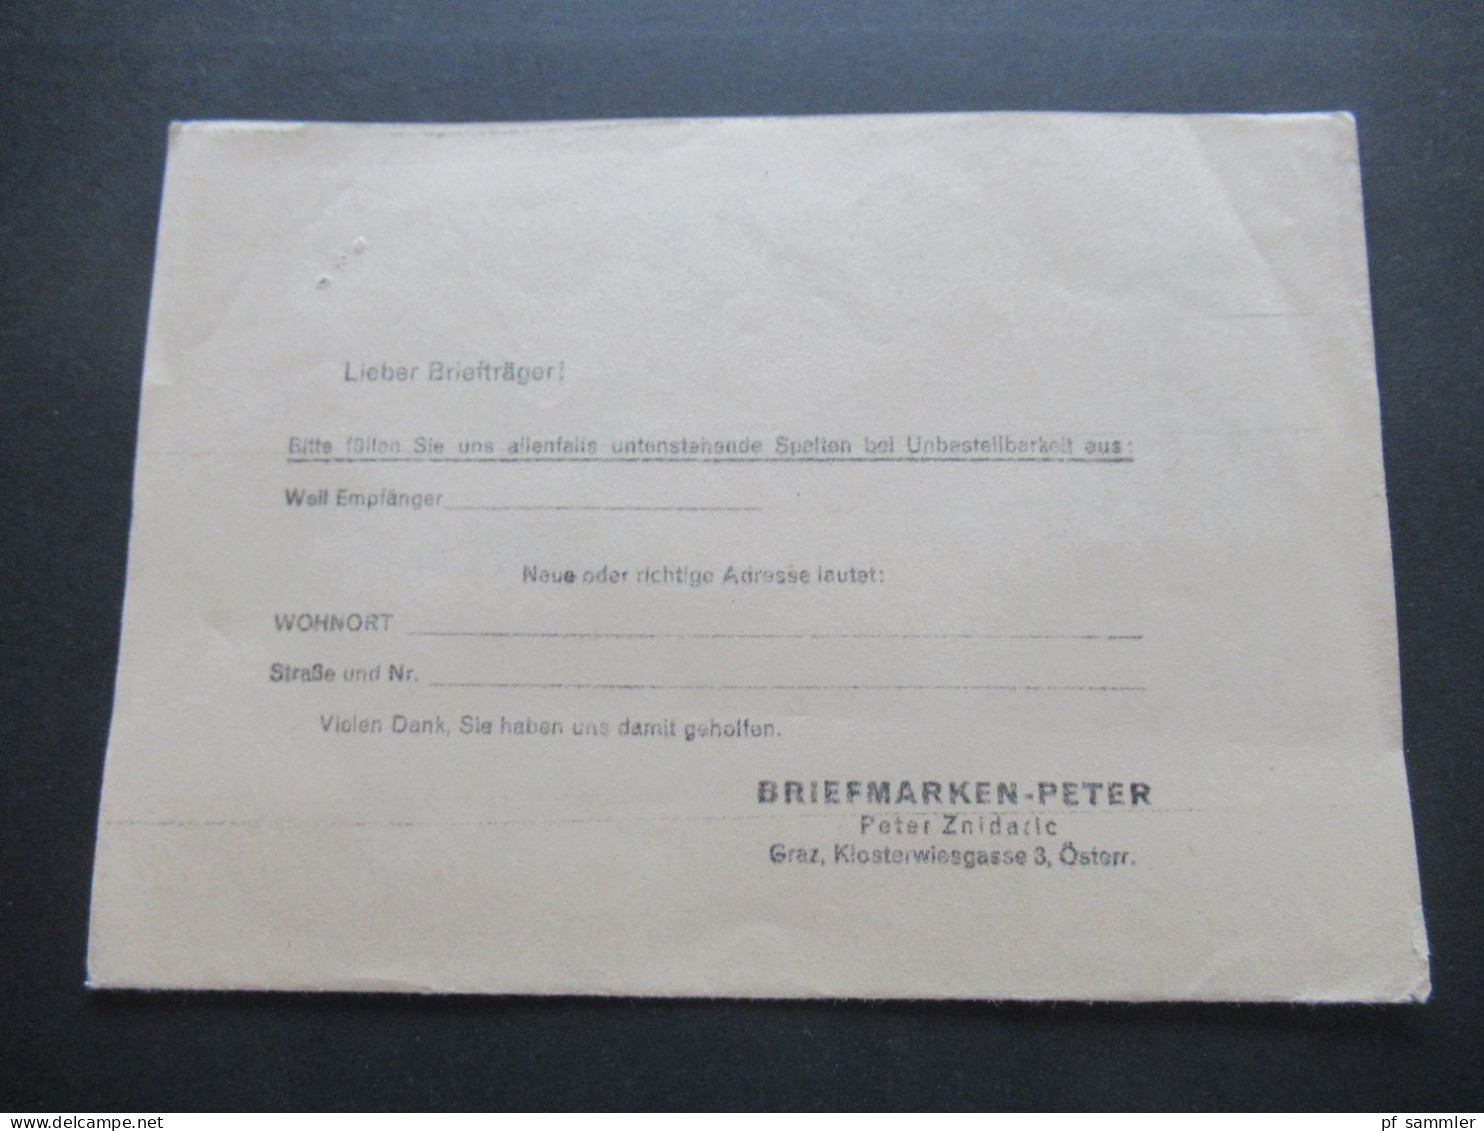 Österreich 1965 Freimarken EF Drucksache Briefmarken Peter Graz Klosterwiesgasse 4 / Austria Netto Ist Erschienen!! - Covers & Documents